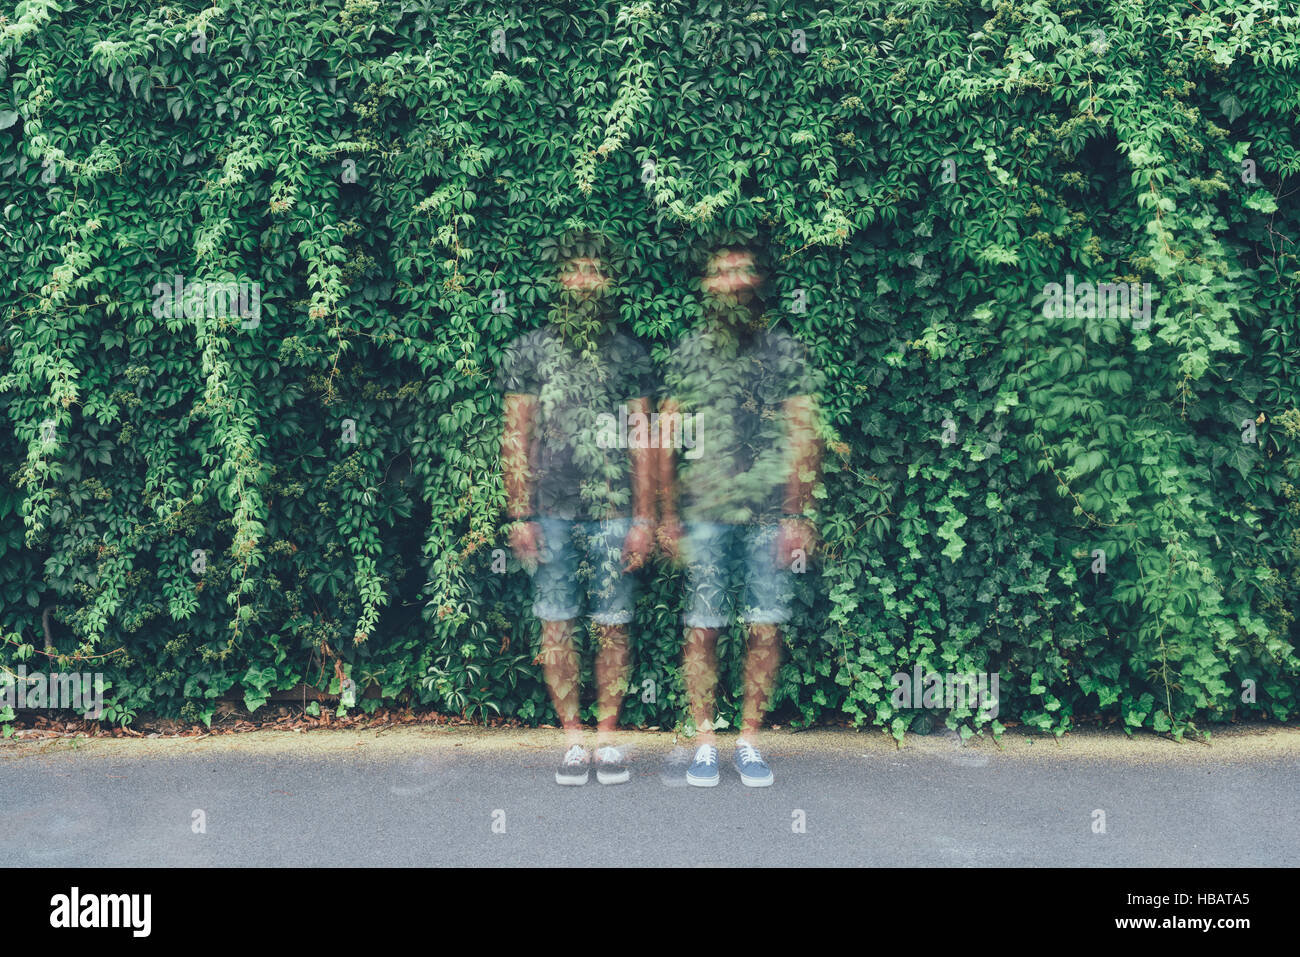 Portrait de l'exposition Double transparent des mâles adultes et des jumeaux identiques feuillage vert Banque D'Images